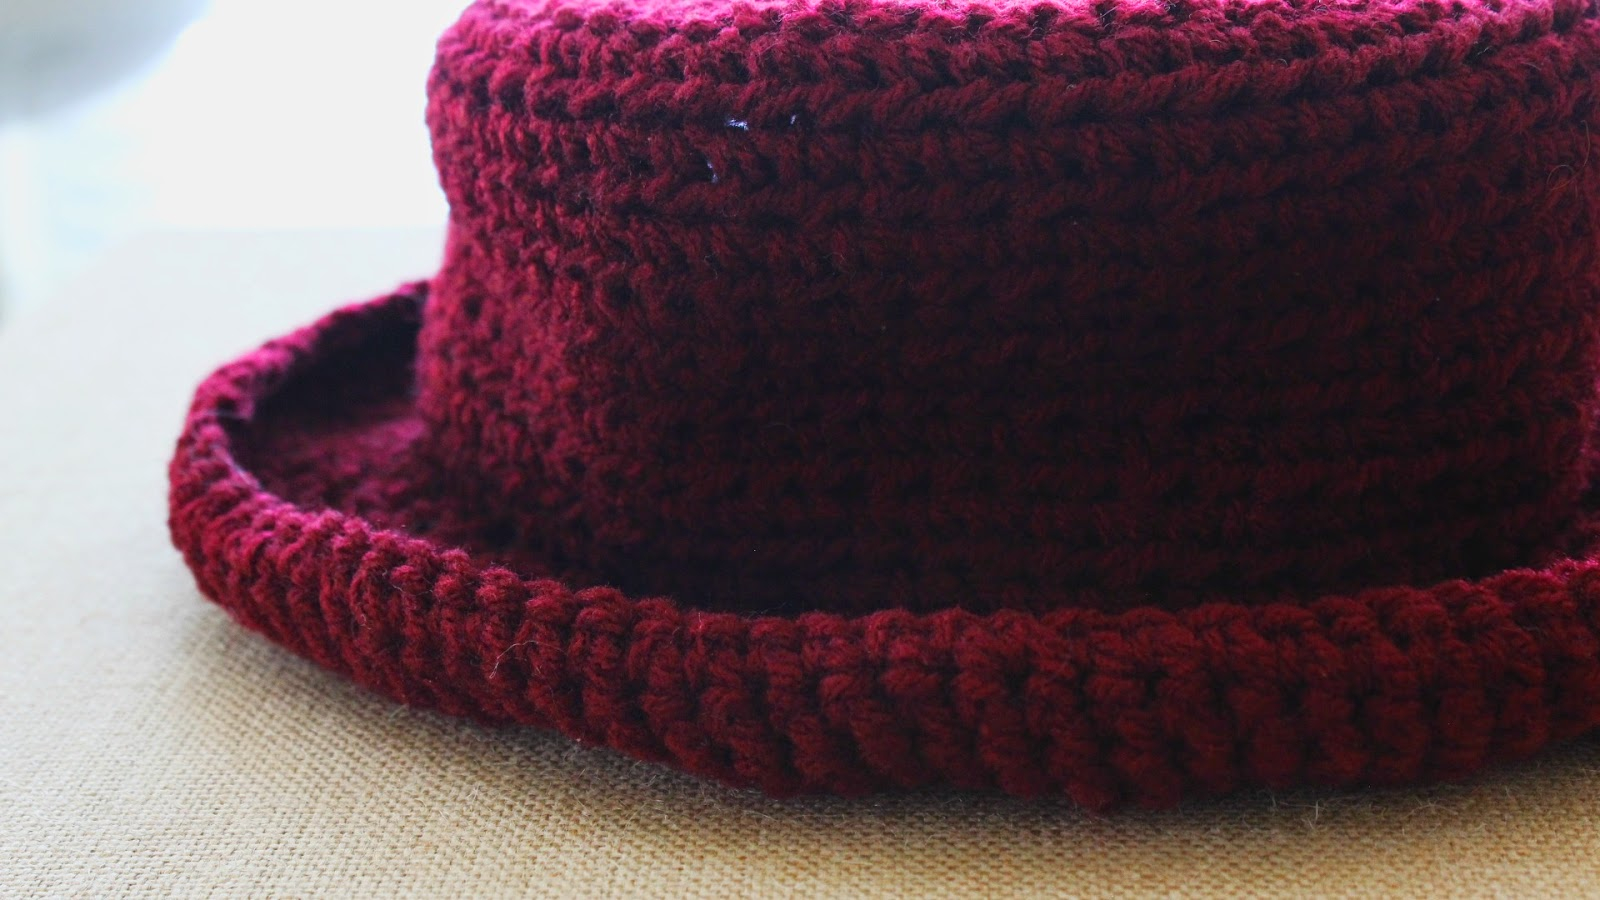 Single Crochet Hat Pattern The Dream Crochet Blog Diy The Crochet Bowler Hat Free Pattern